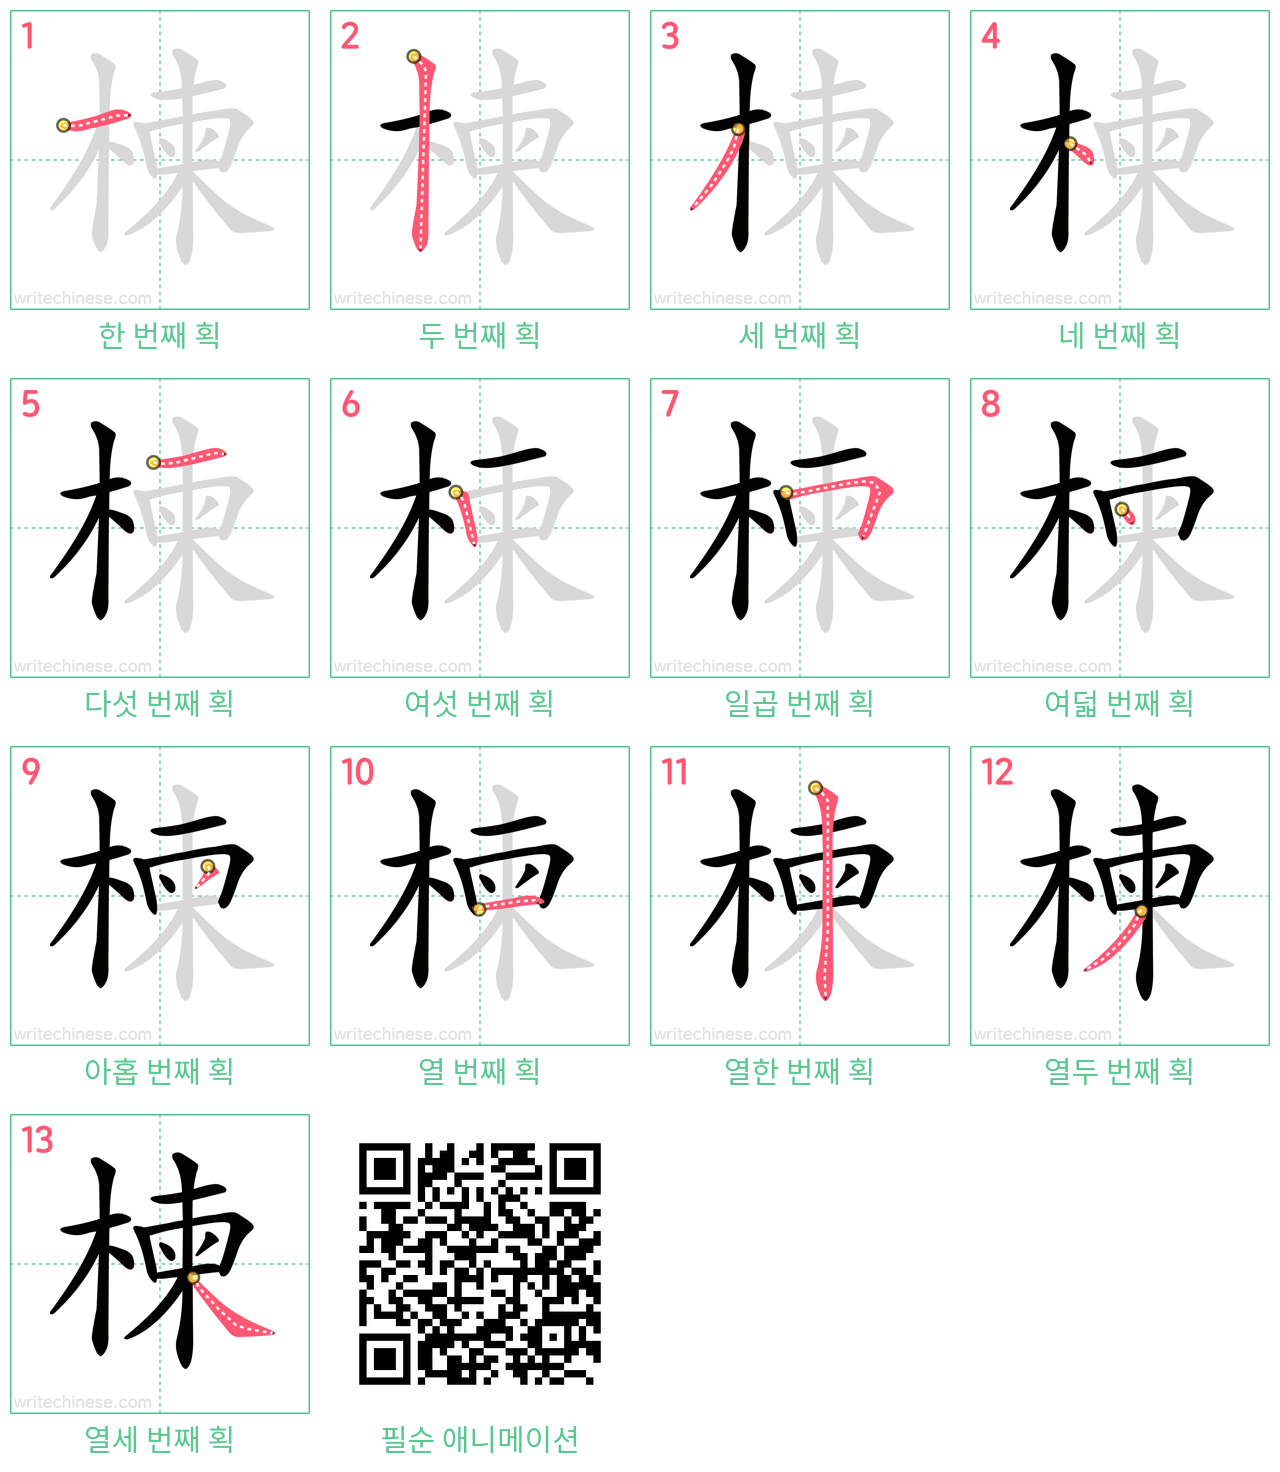 楝 step-by-step stroke order diagrams